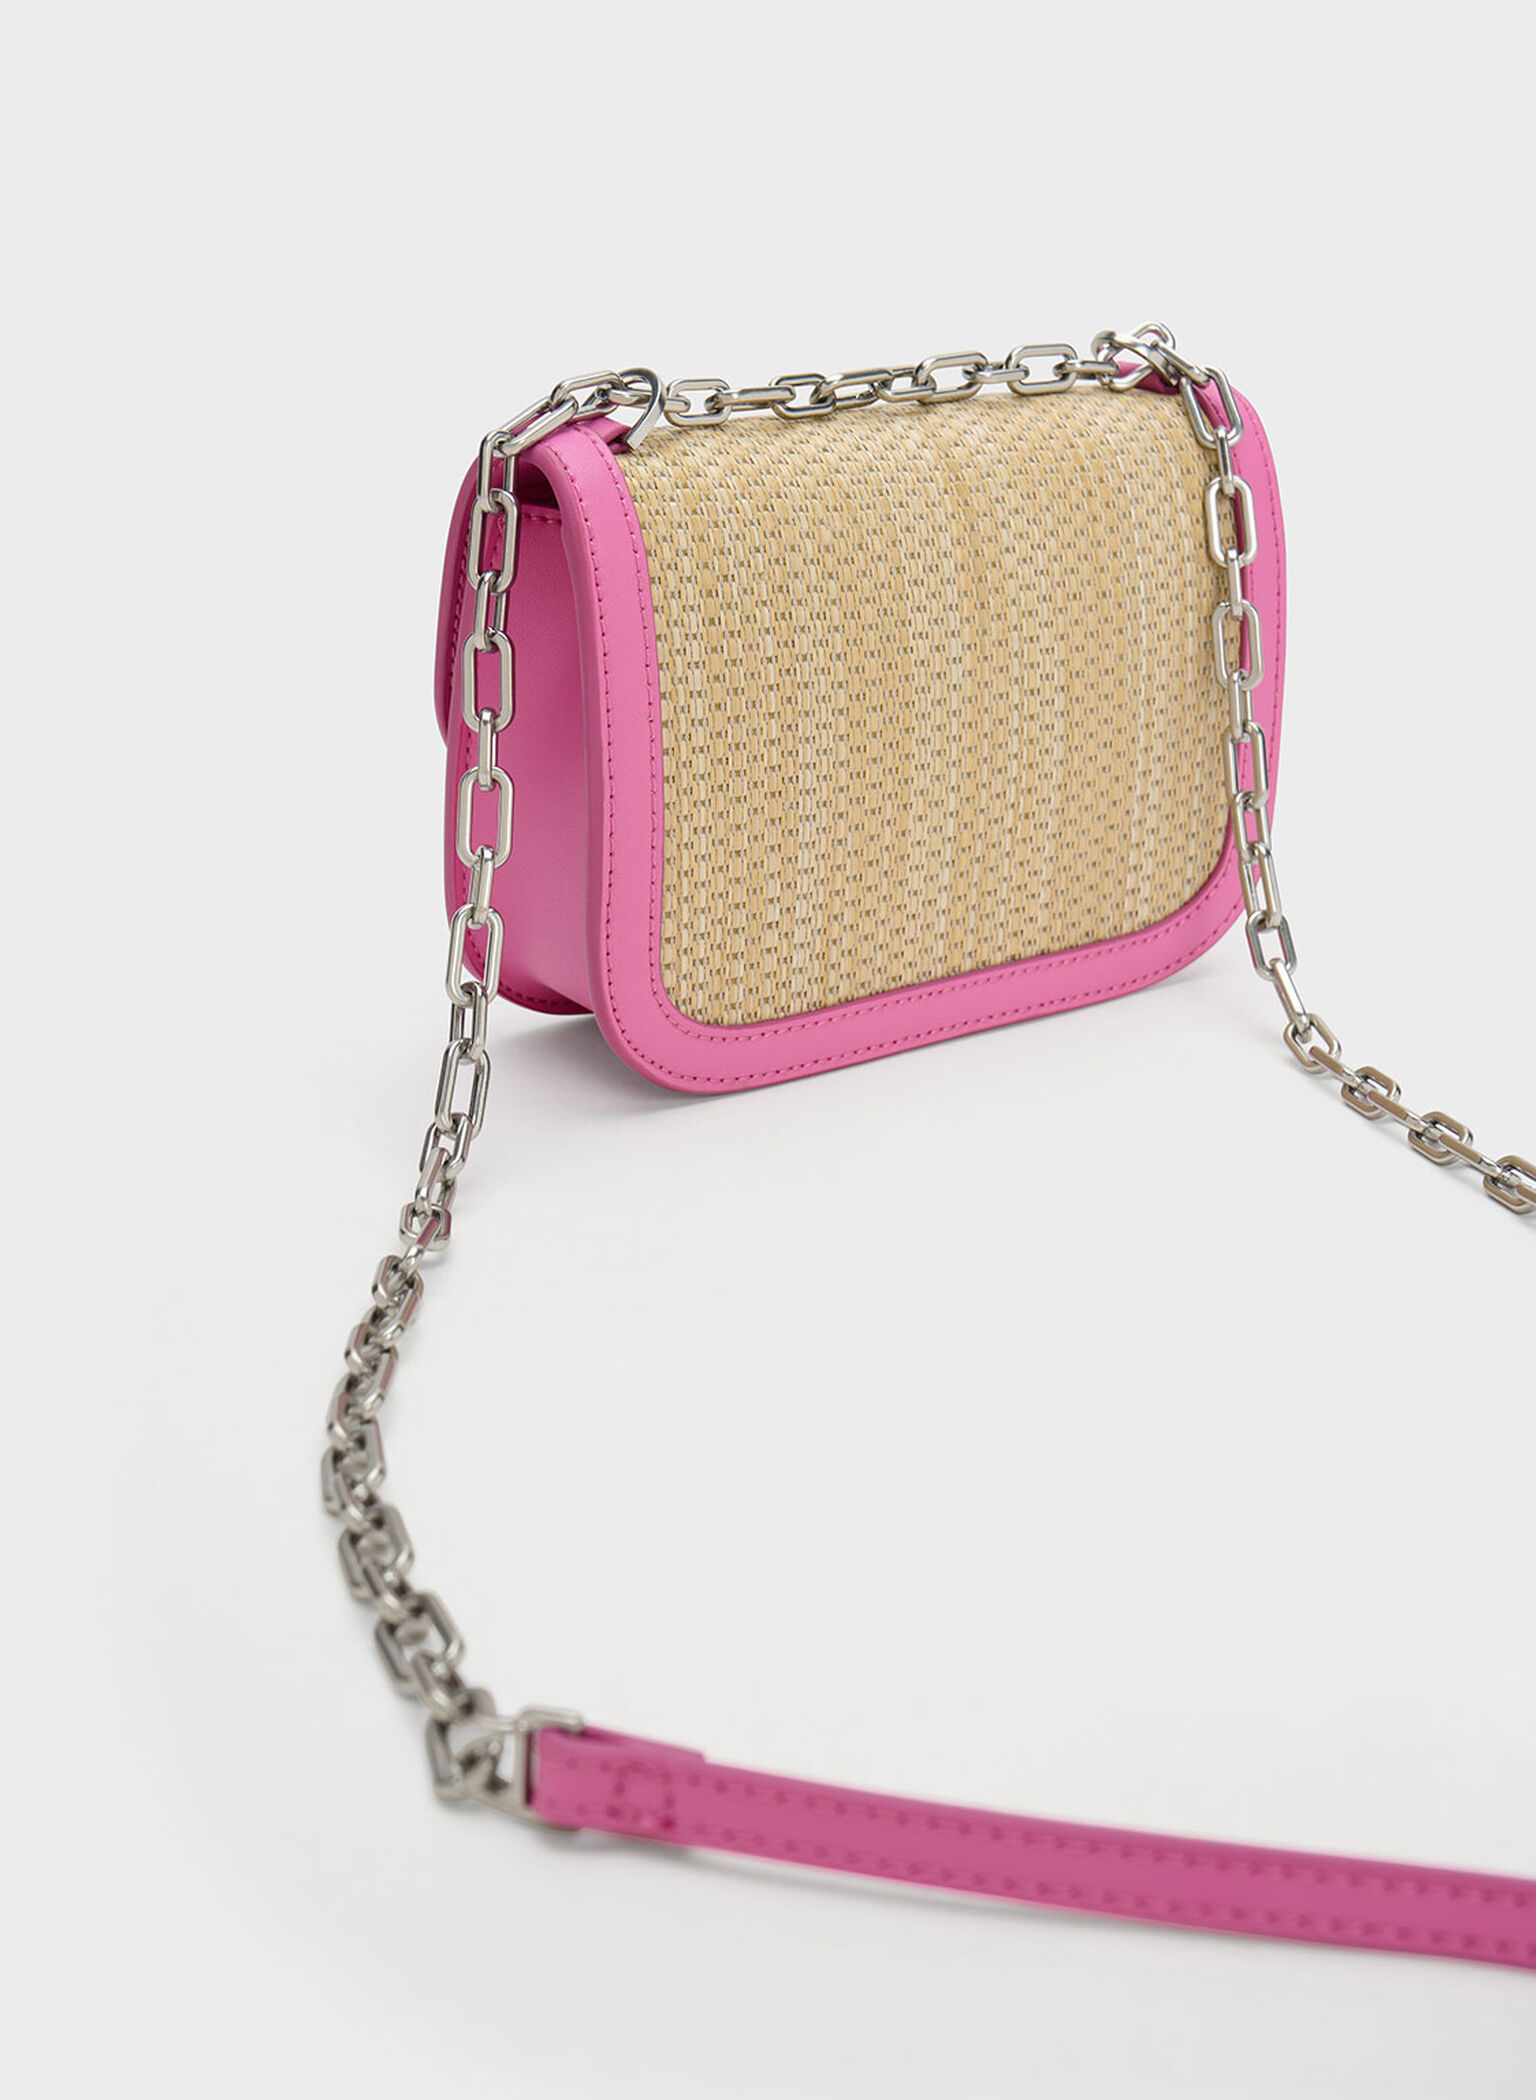 Charlot Raffia Chain Strap Bag, Pink, hi-res